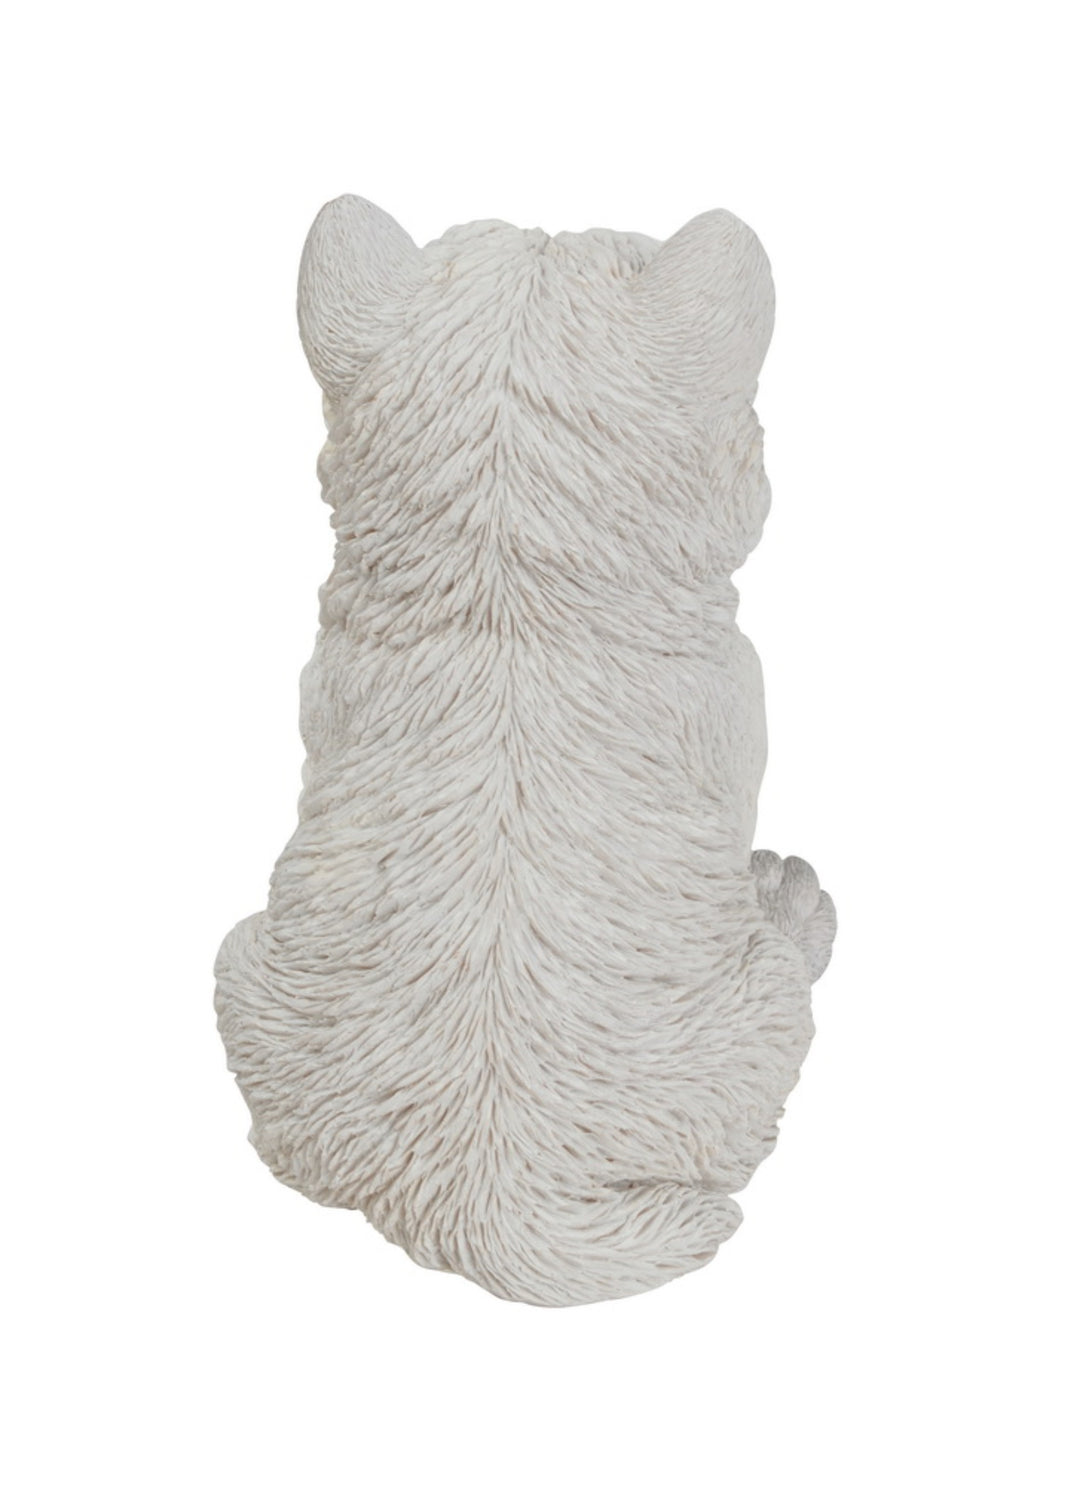 White Terrier Puppy Hi-Line Gift Ltd.